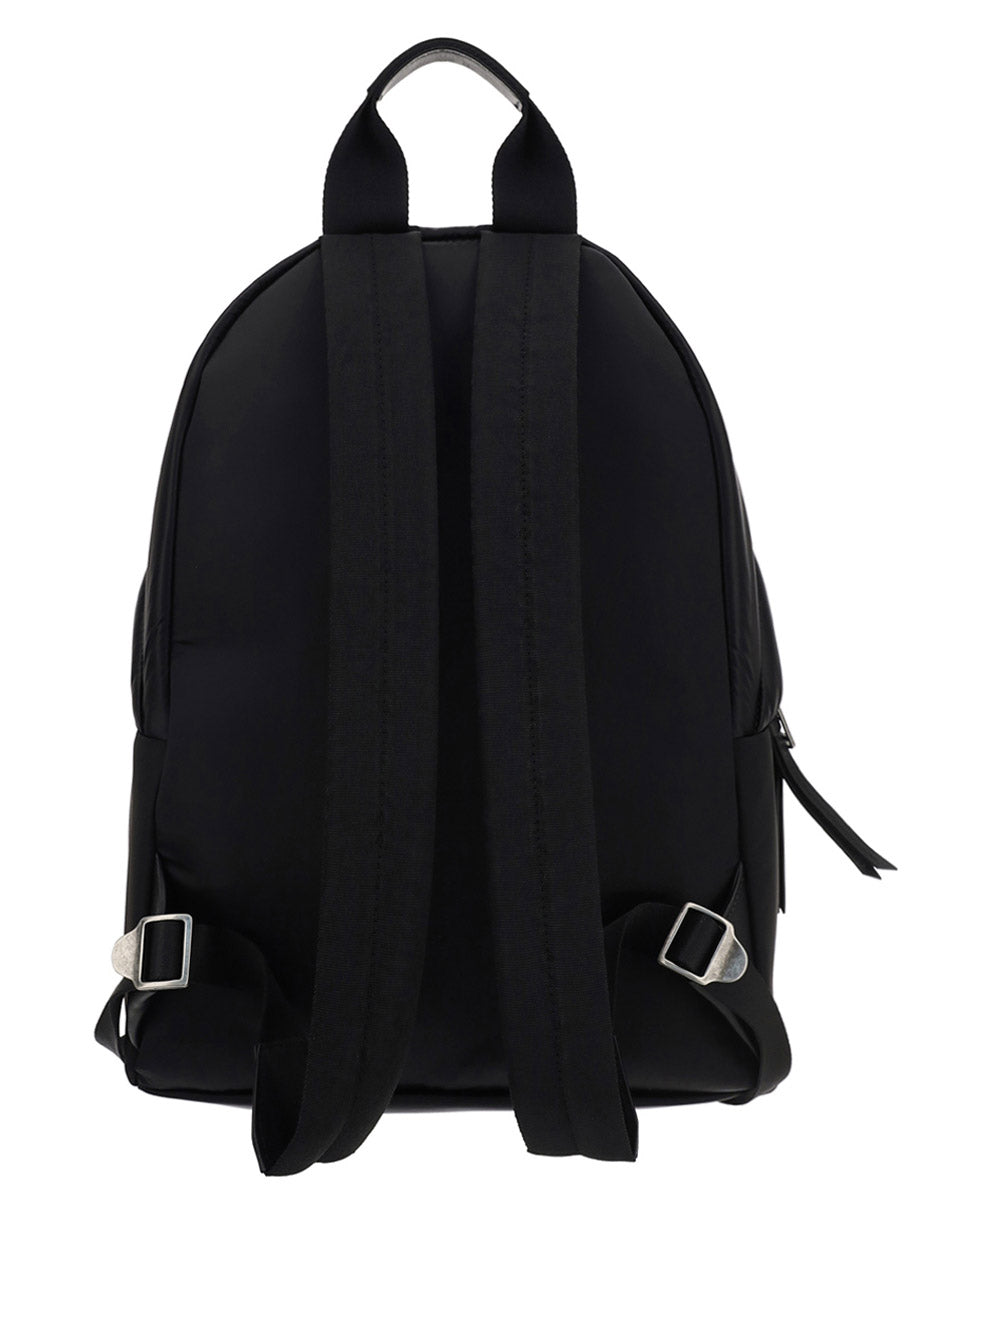 Curved Logo Backpack - Black